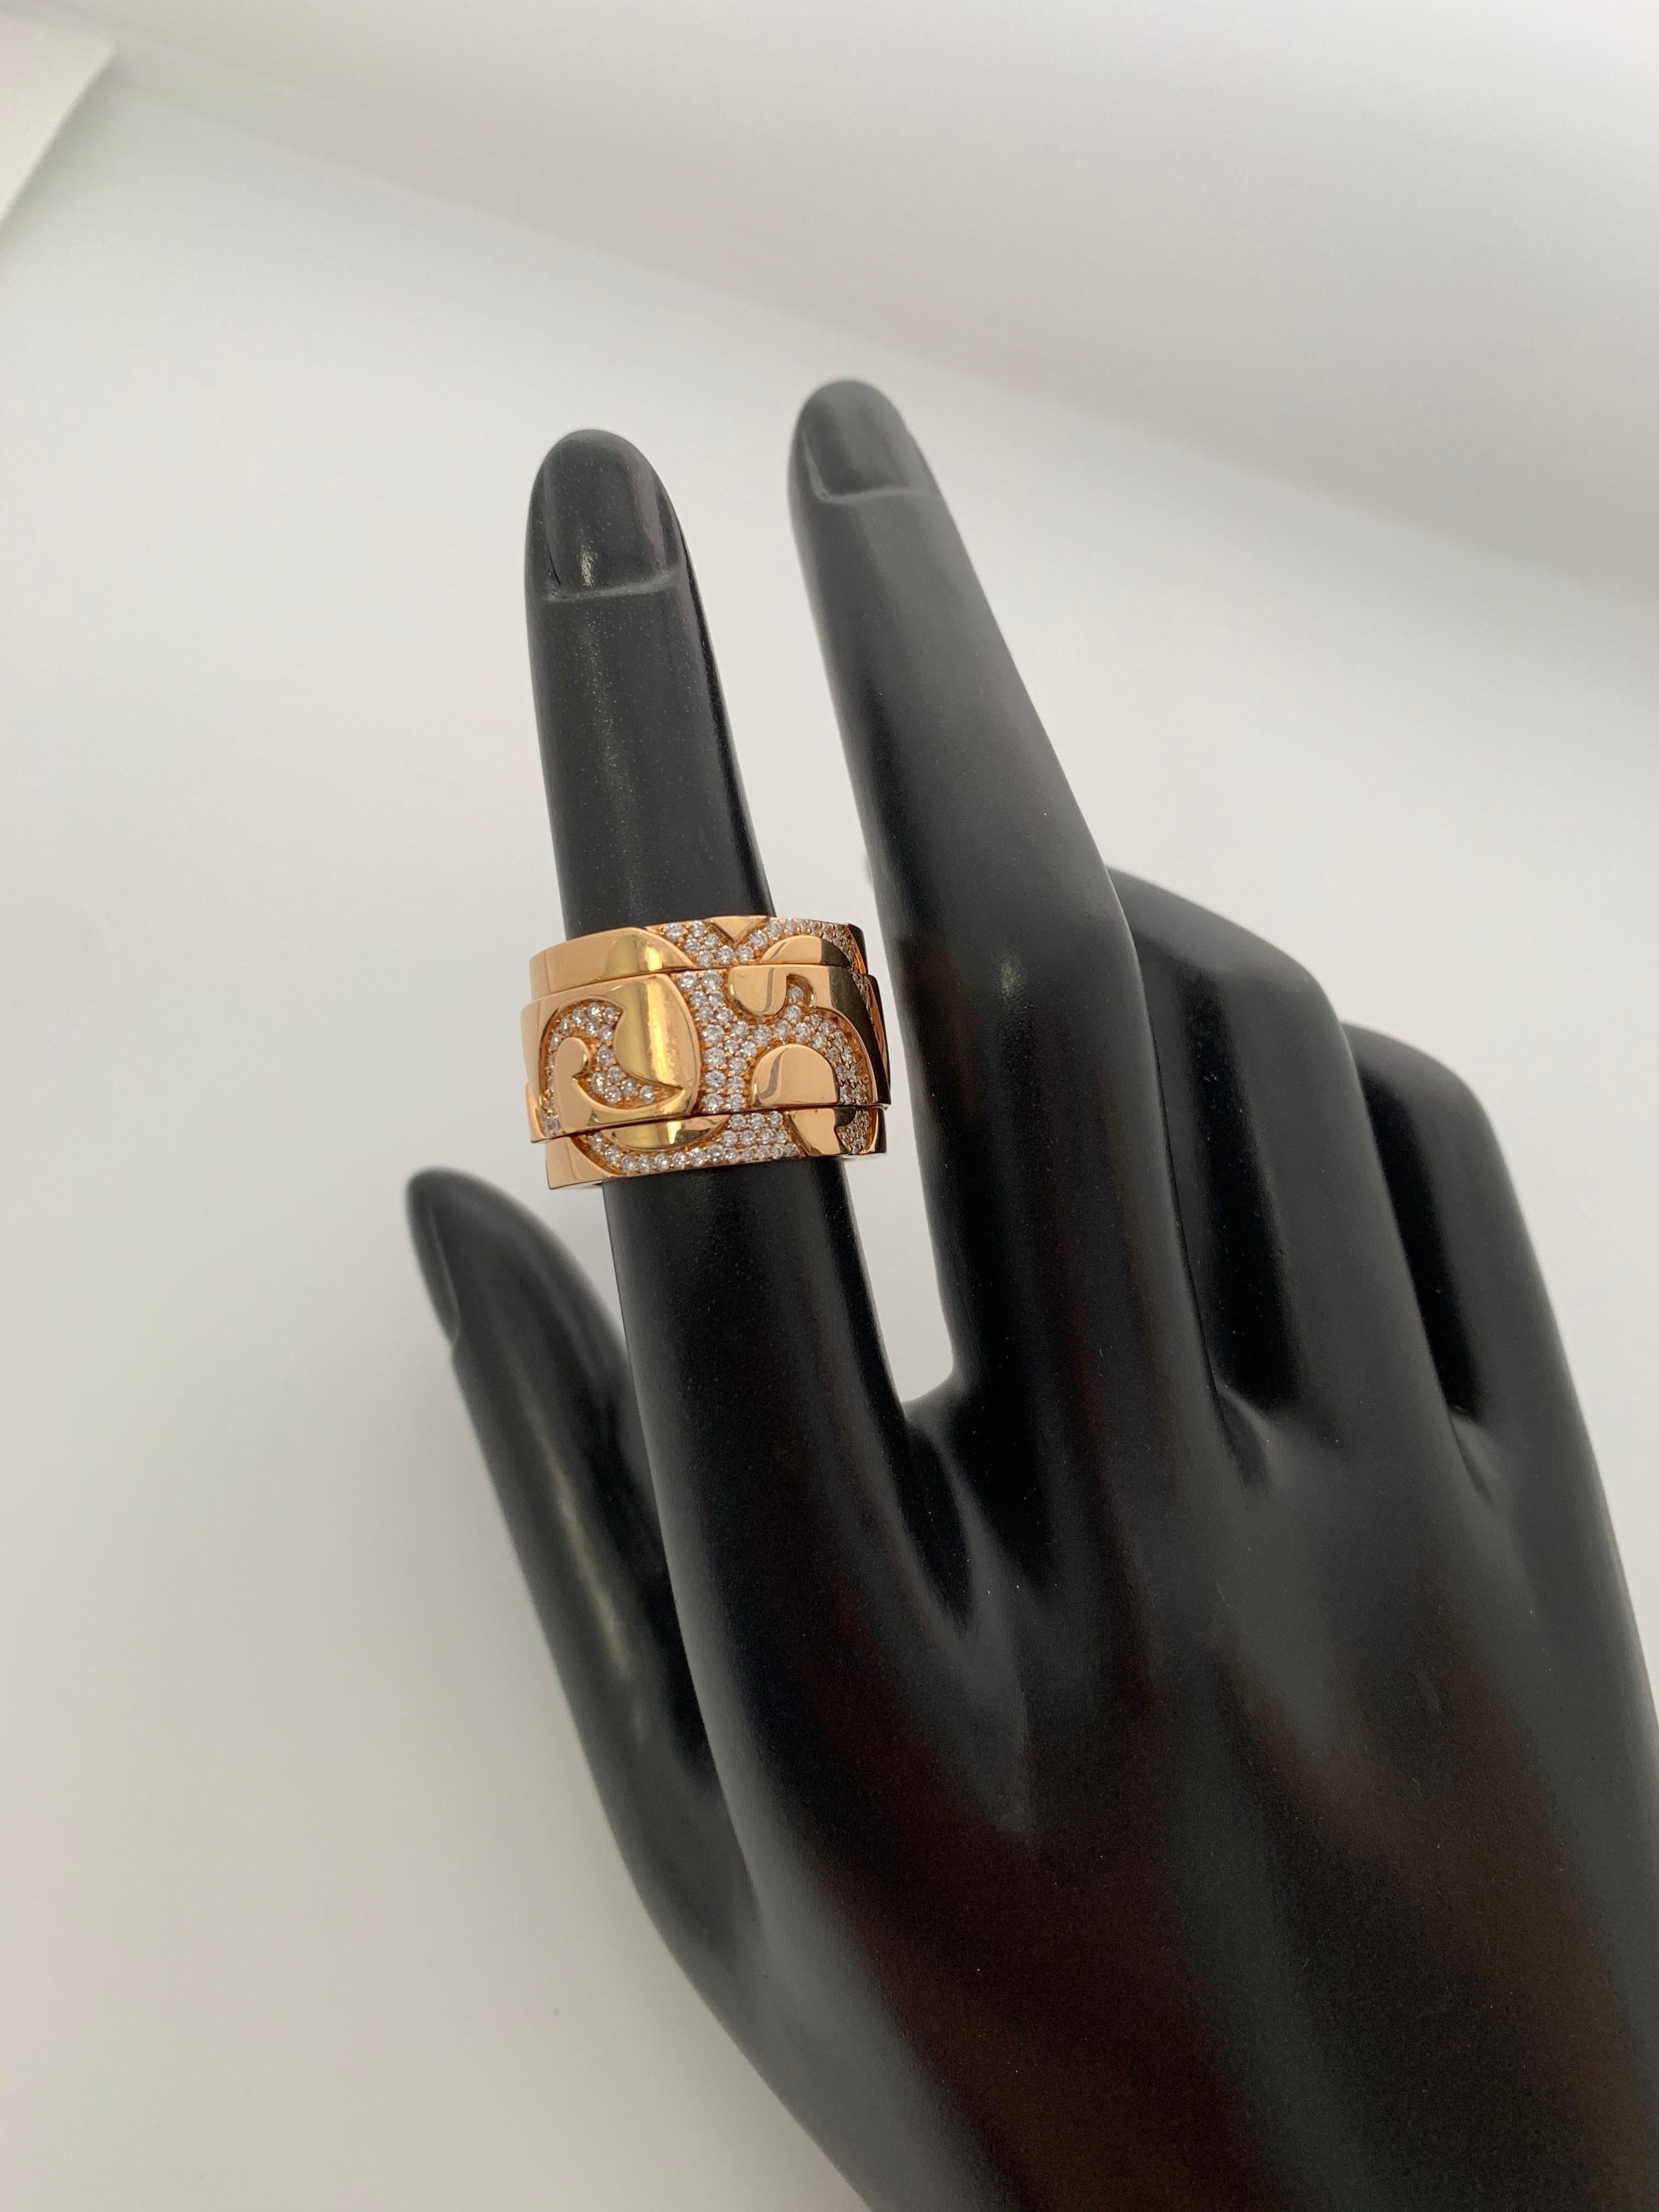 18k gold cigar band ring